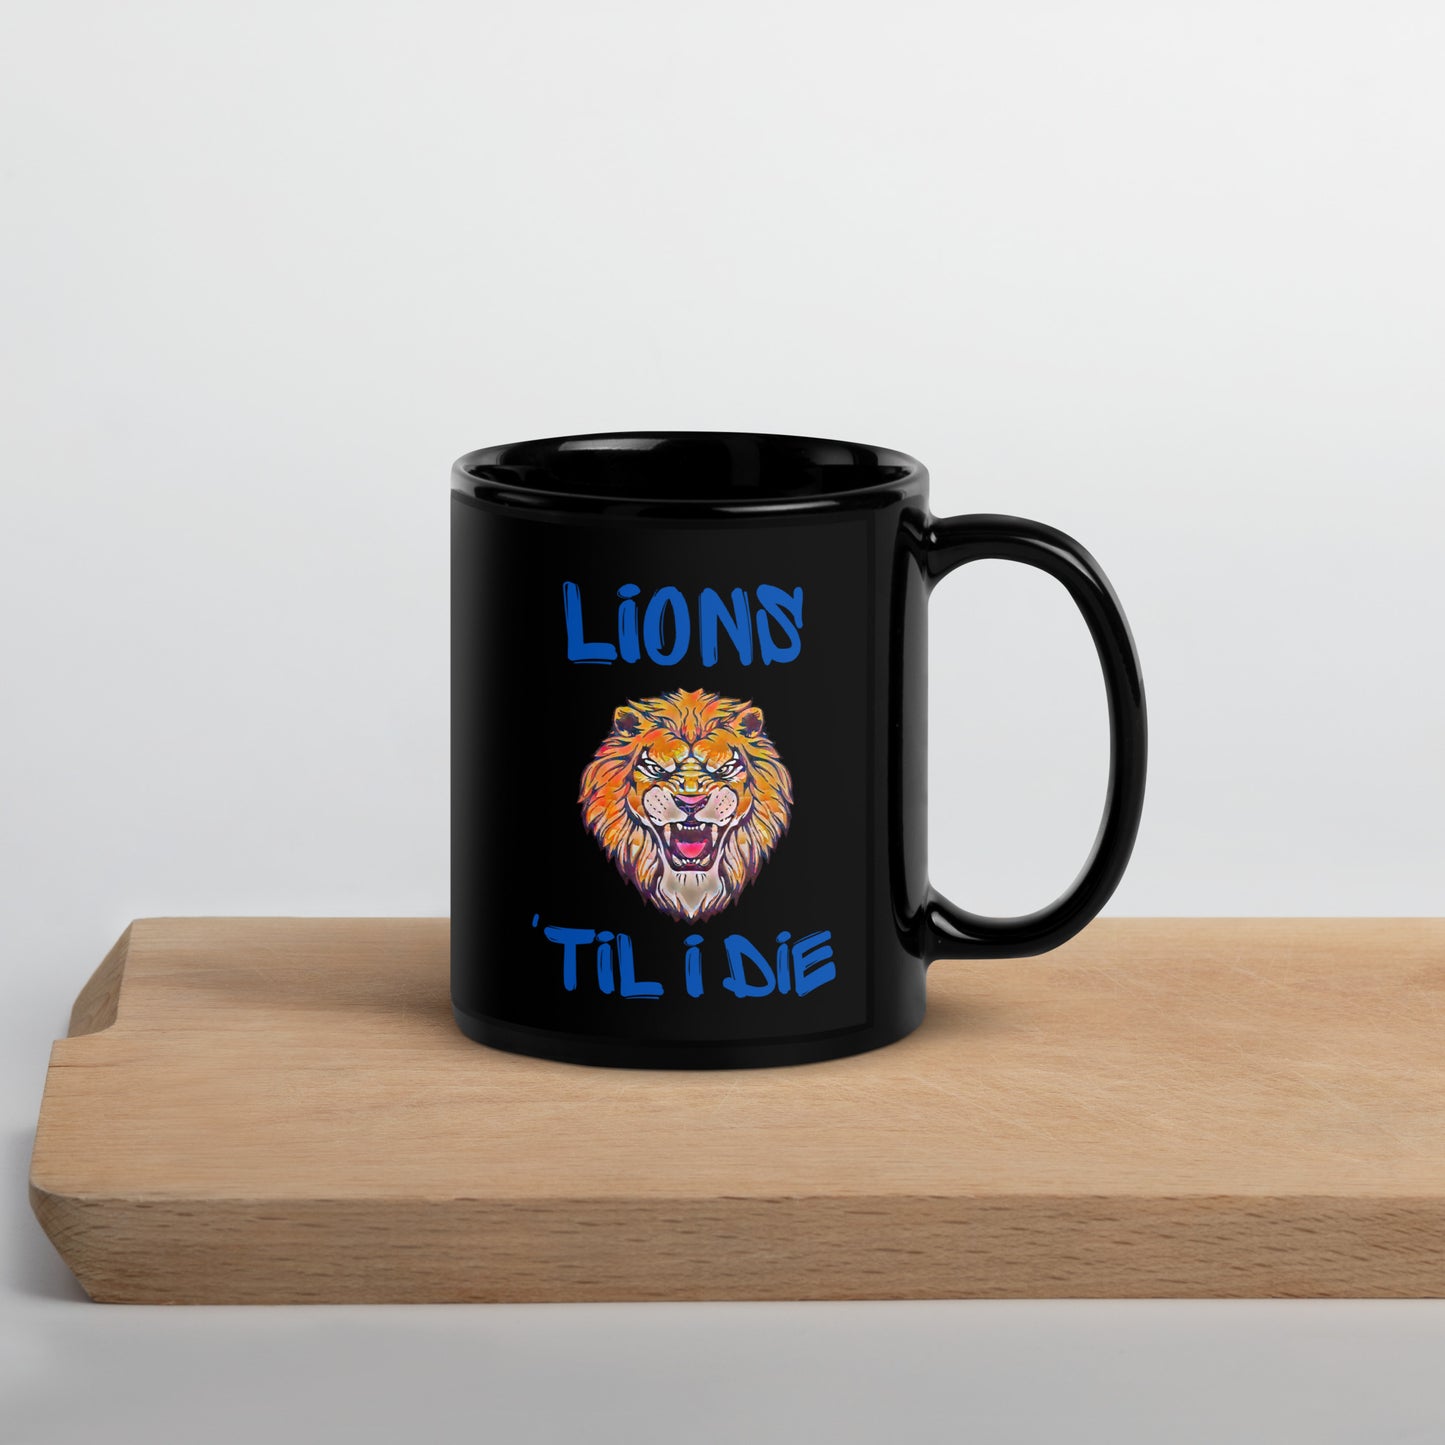 Lions 'Til I Die Mug